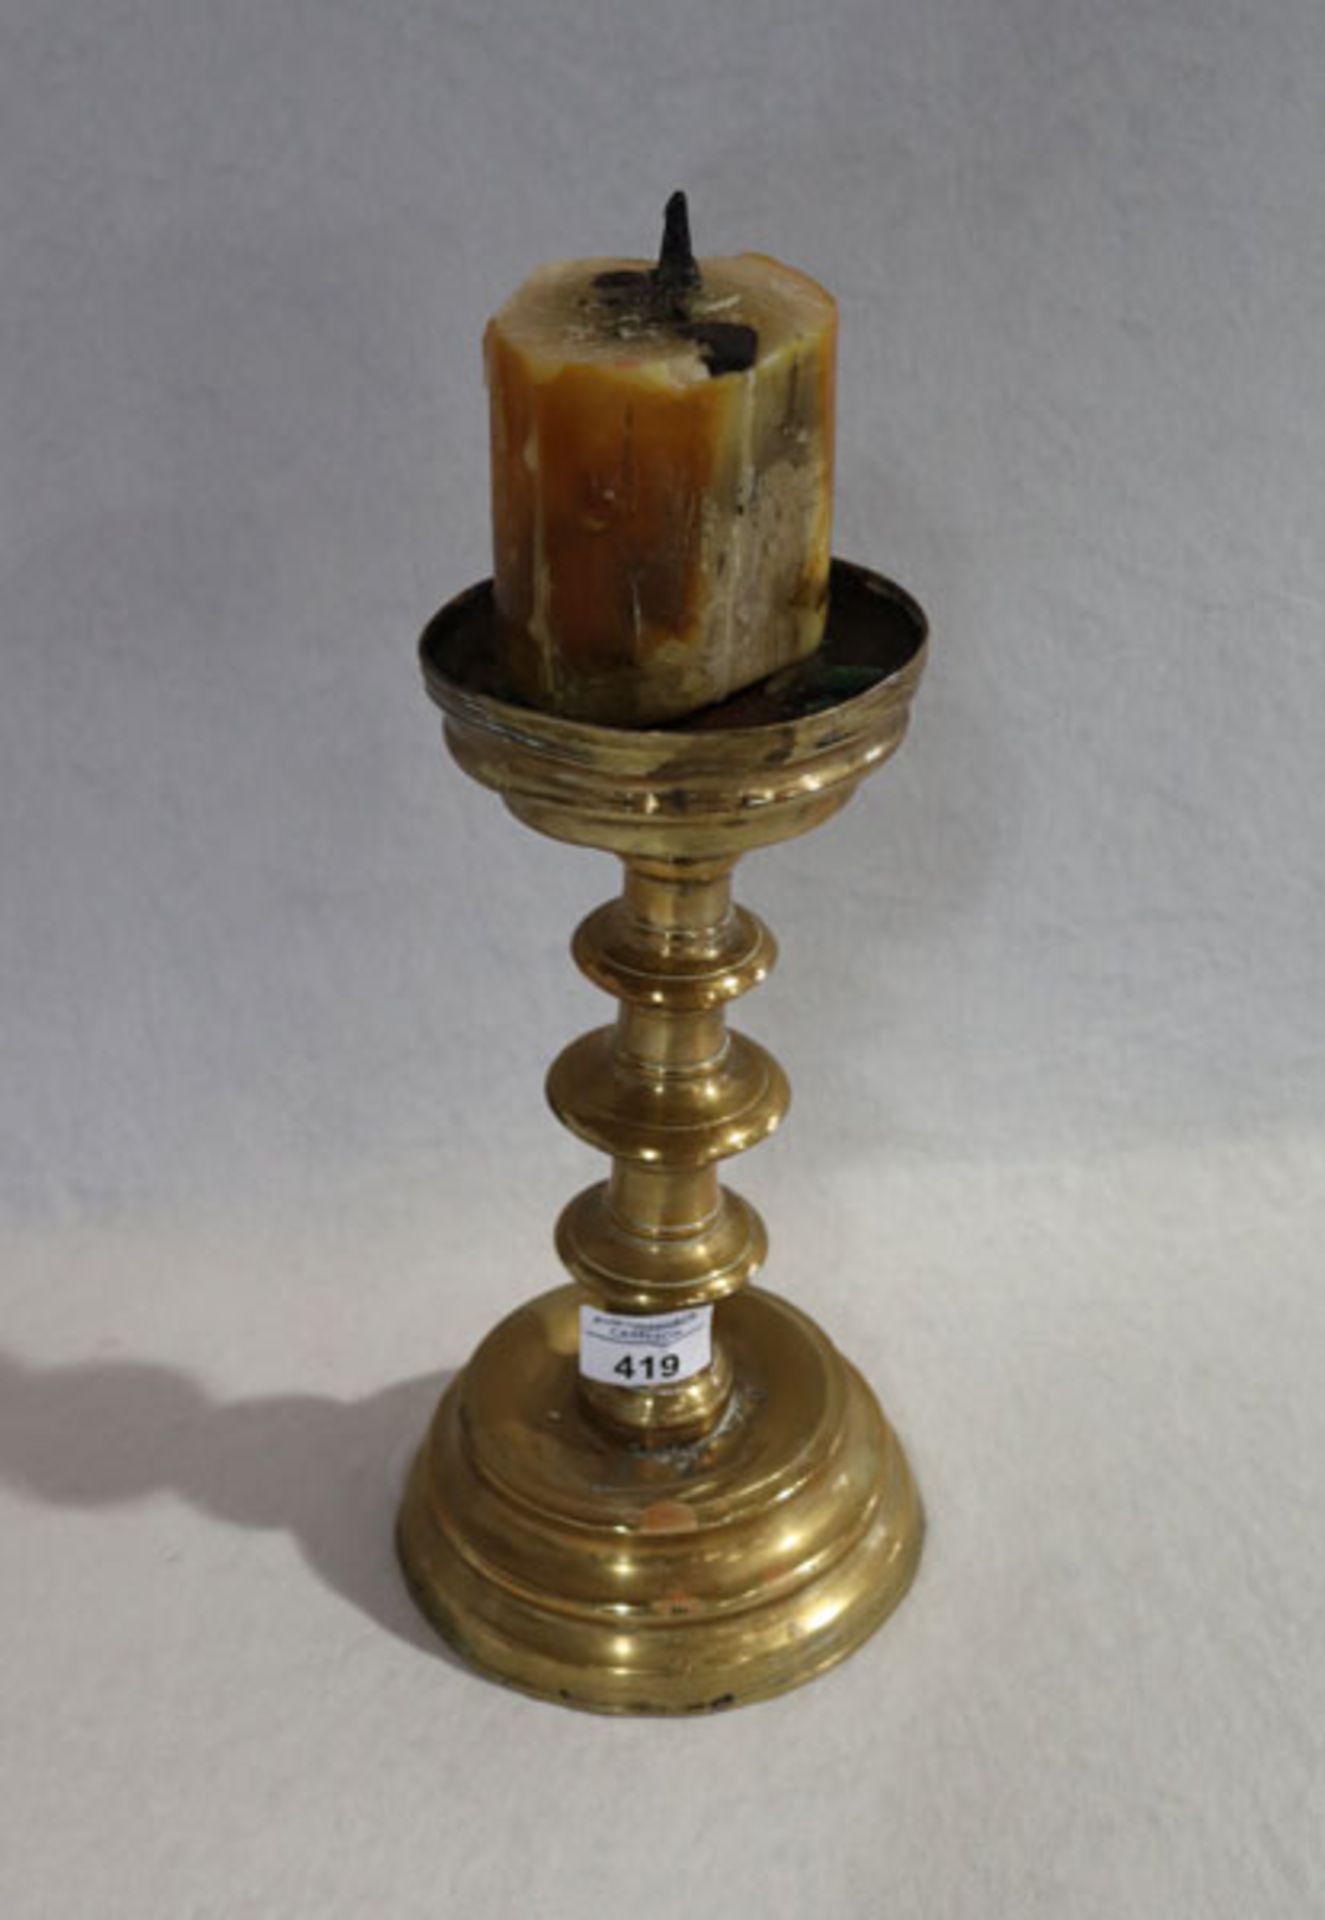 Messing Kerzenleuchter um 1800, H 38 cm, D 15 cm, starke Alters- und Gebrauchsspuren